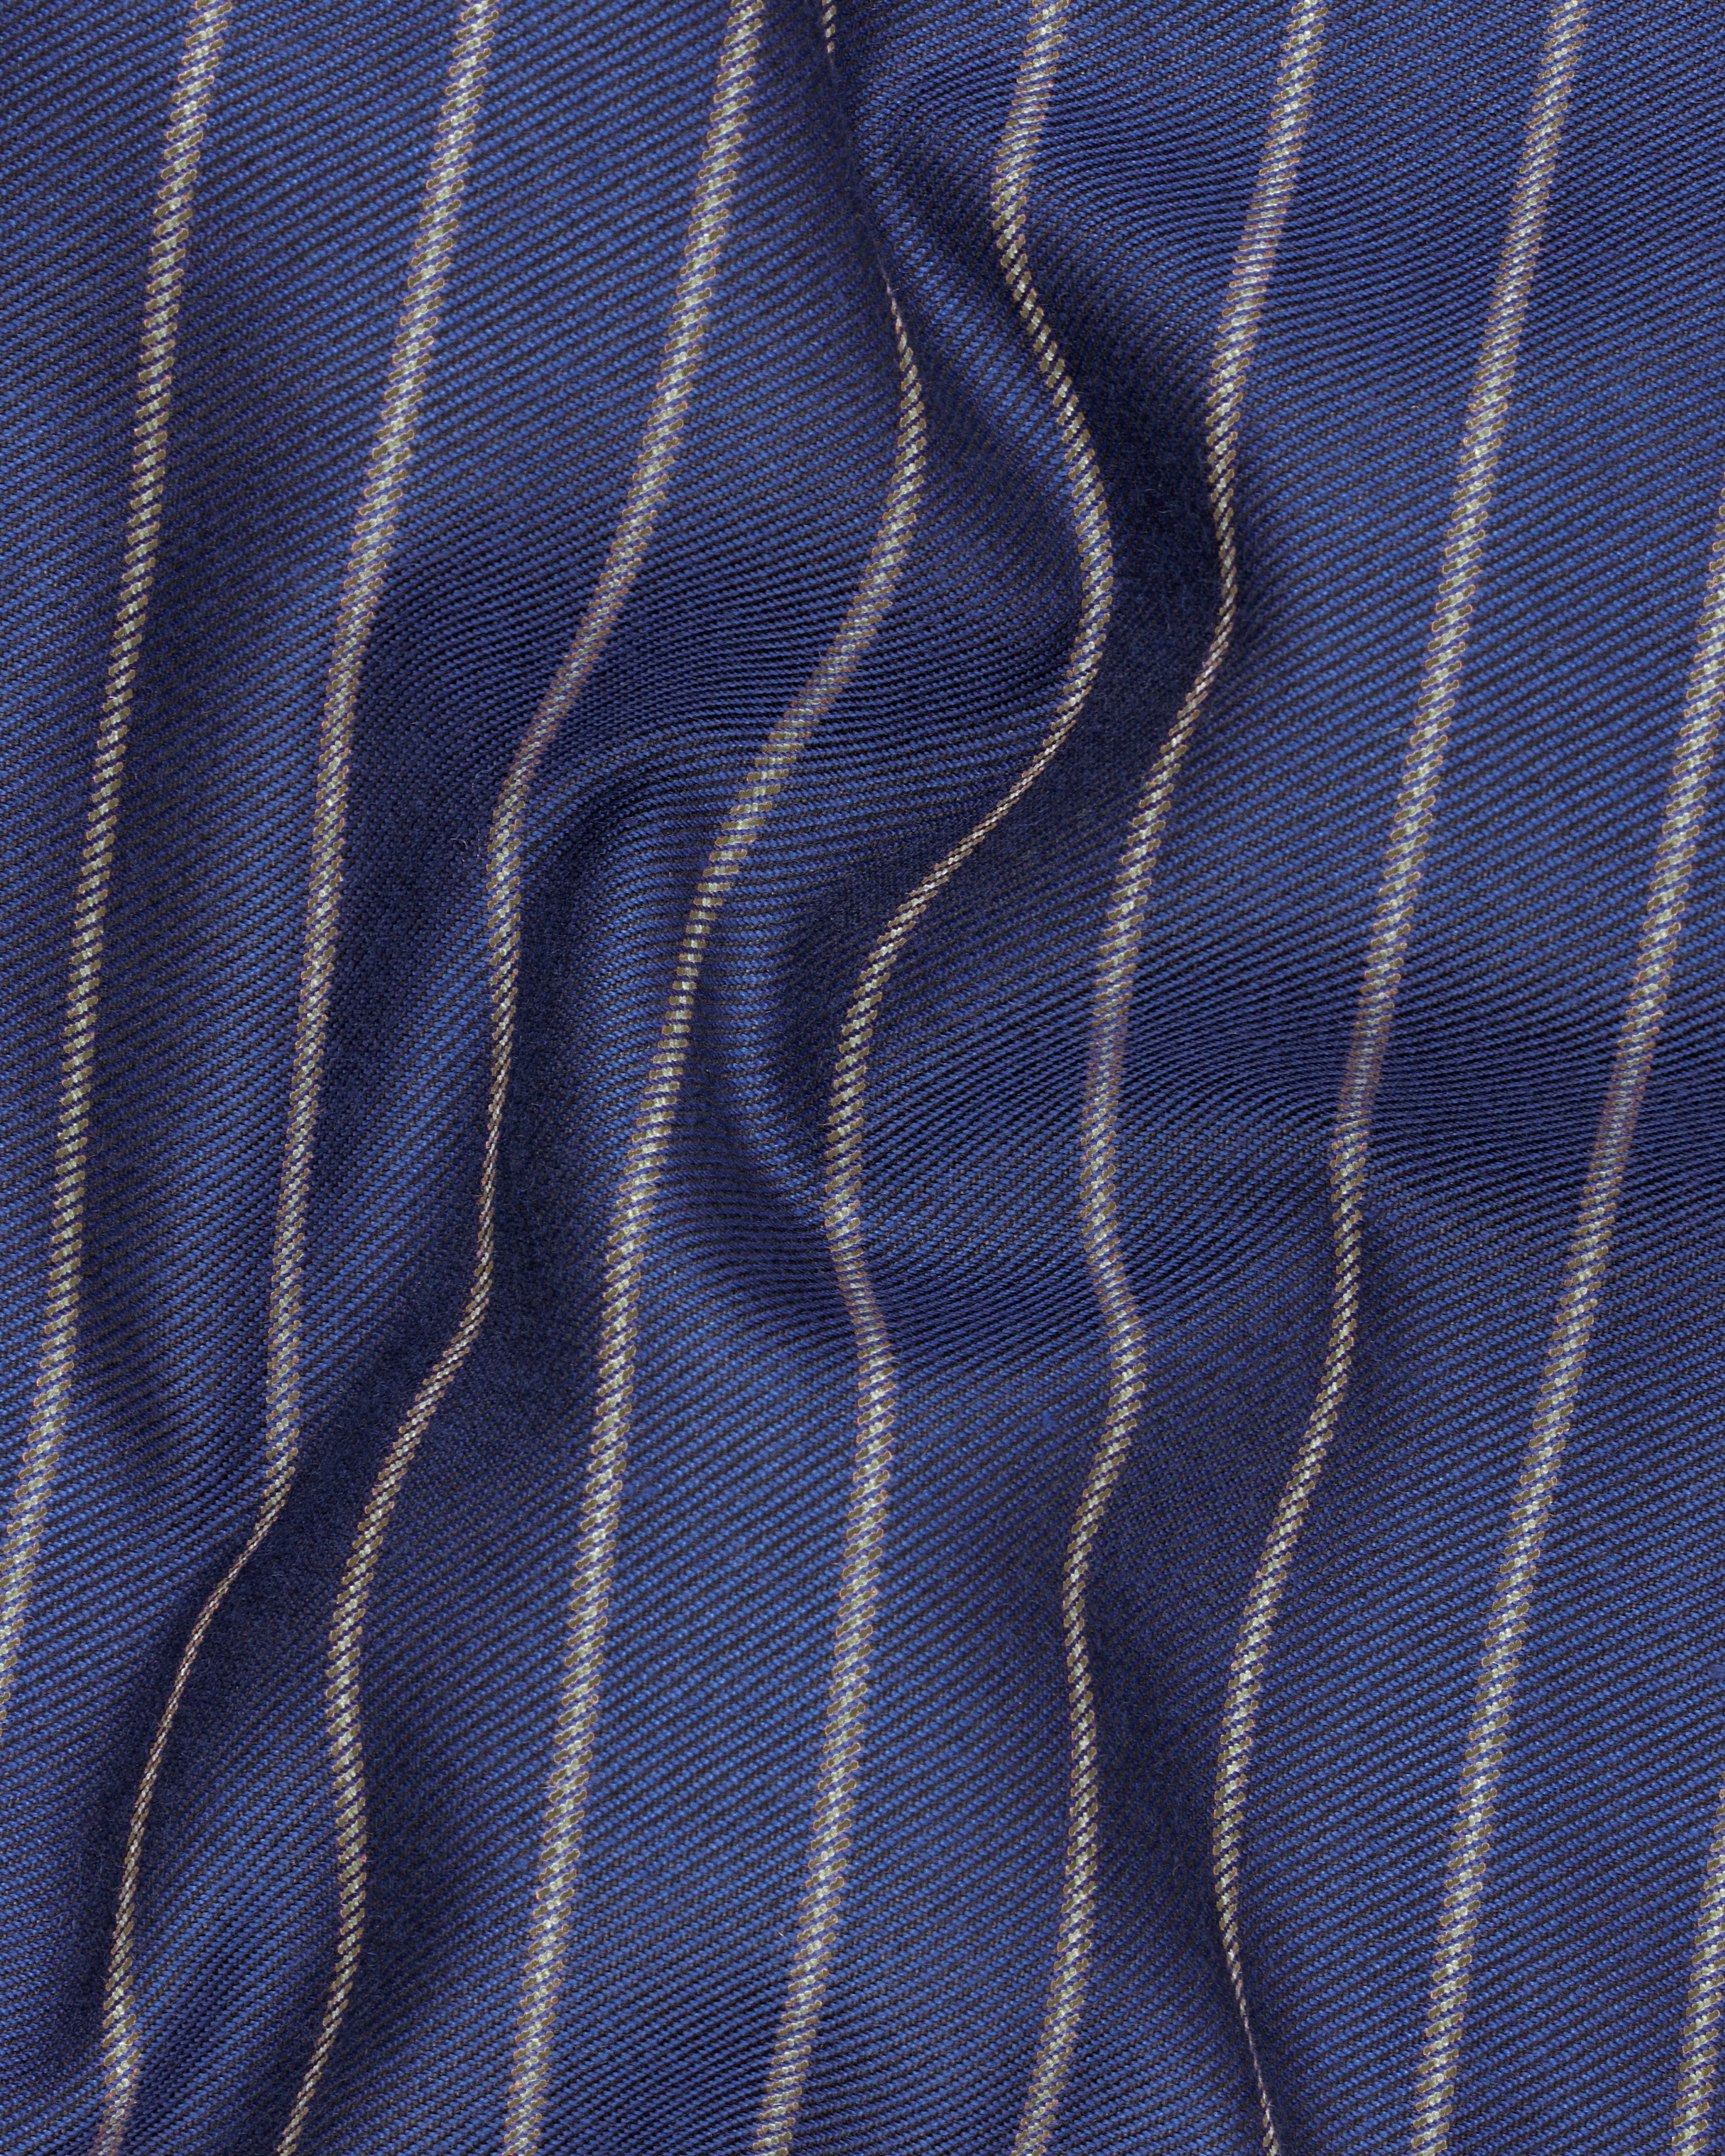 Pickled Blue Striped Pants T2518-28, T2518-30, T2518-32, T2518-34, T2518-36, T2518-38, T2518-40, T2518-42, T2518-44